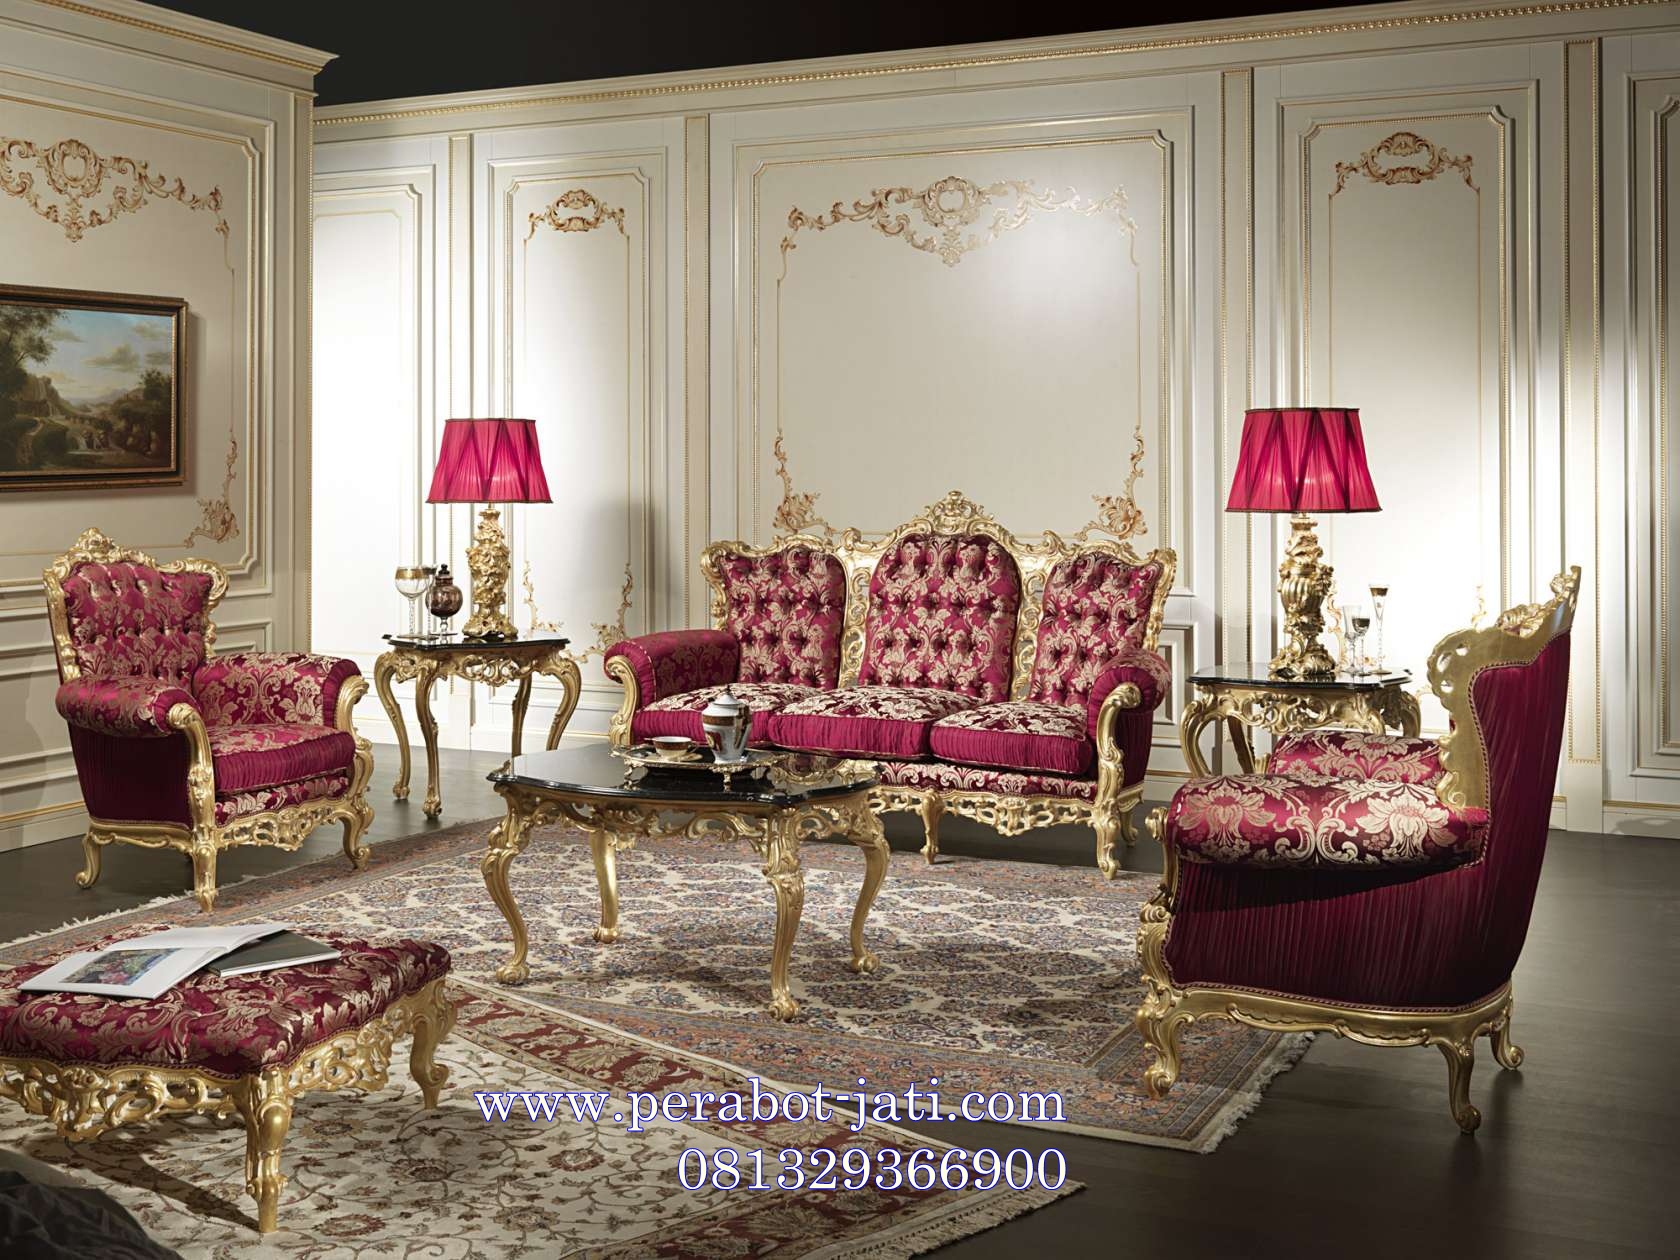 Jual Kursi Sofa Ruang Tamu Klasik Ukir Royal Luxury Murah